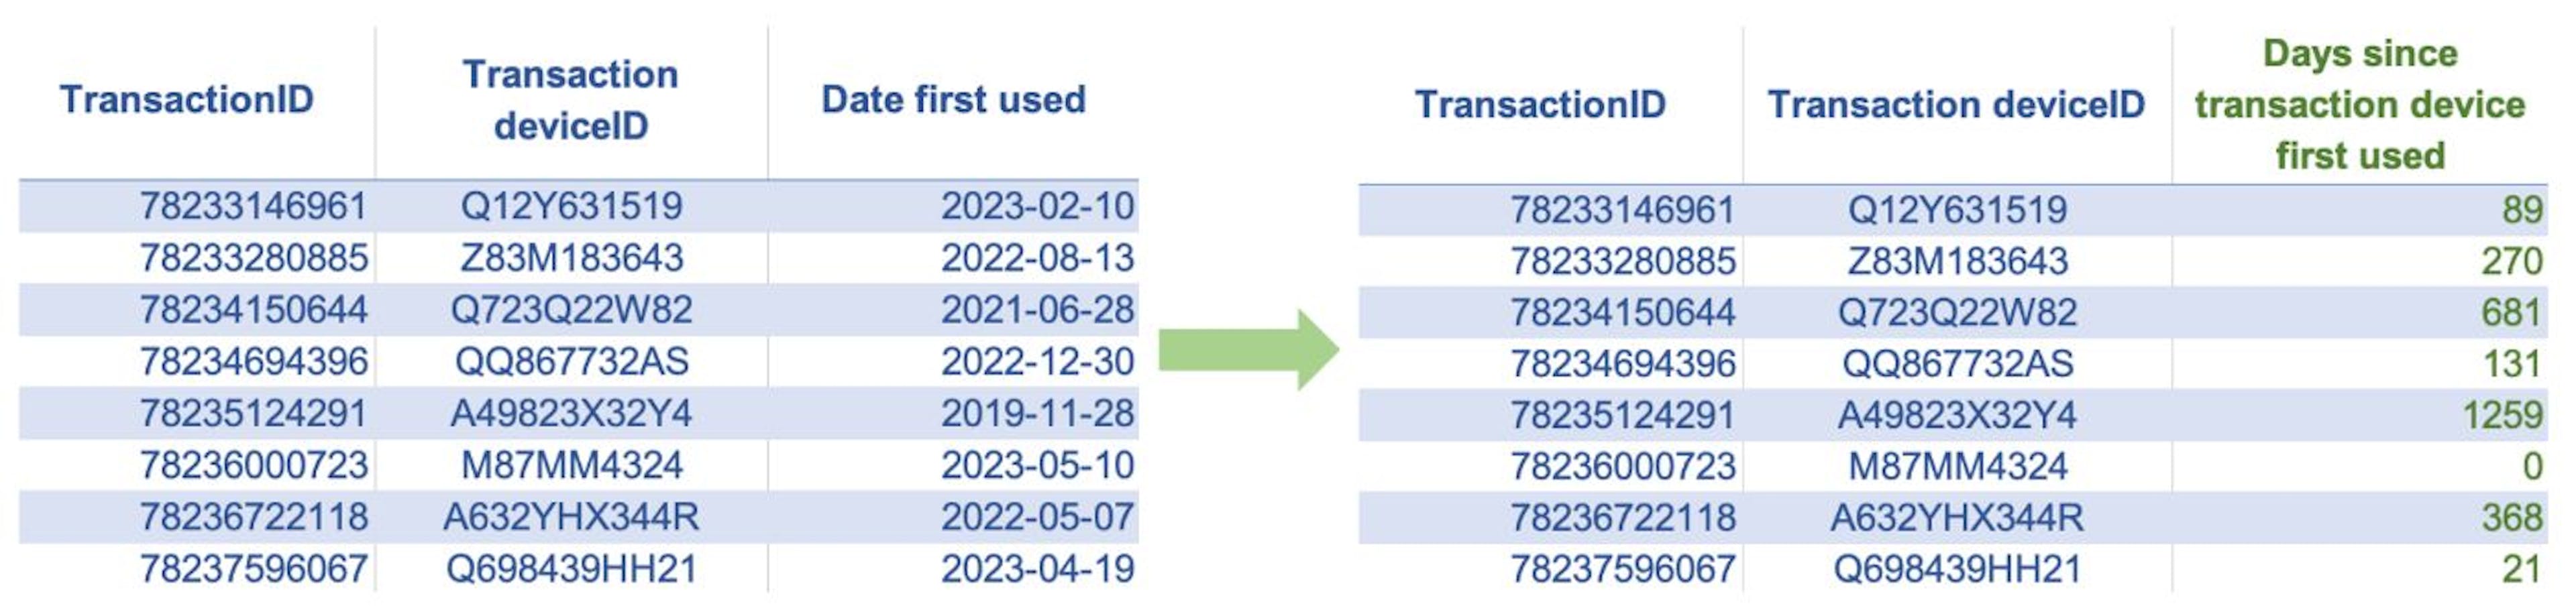 Les tableaux ci-dessus montrent un exemple de codage de l'âge. Ici, nous avons créé une nouvelle fonctionnalité numérique « Jours depuis la première utilisation de l'appareil de transaction » comme différence en jours entre la date de première utilisation de l'appareil du client et la date de transaction actuelle.